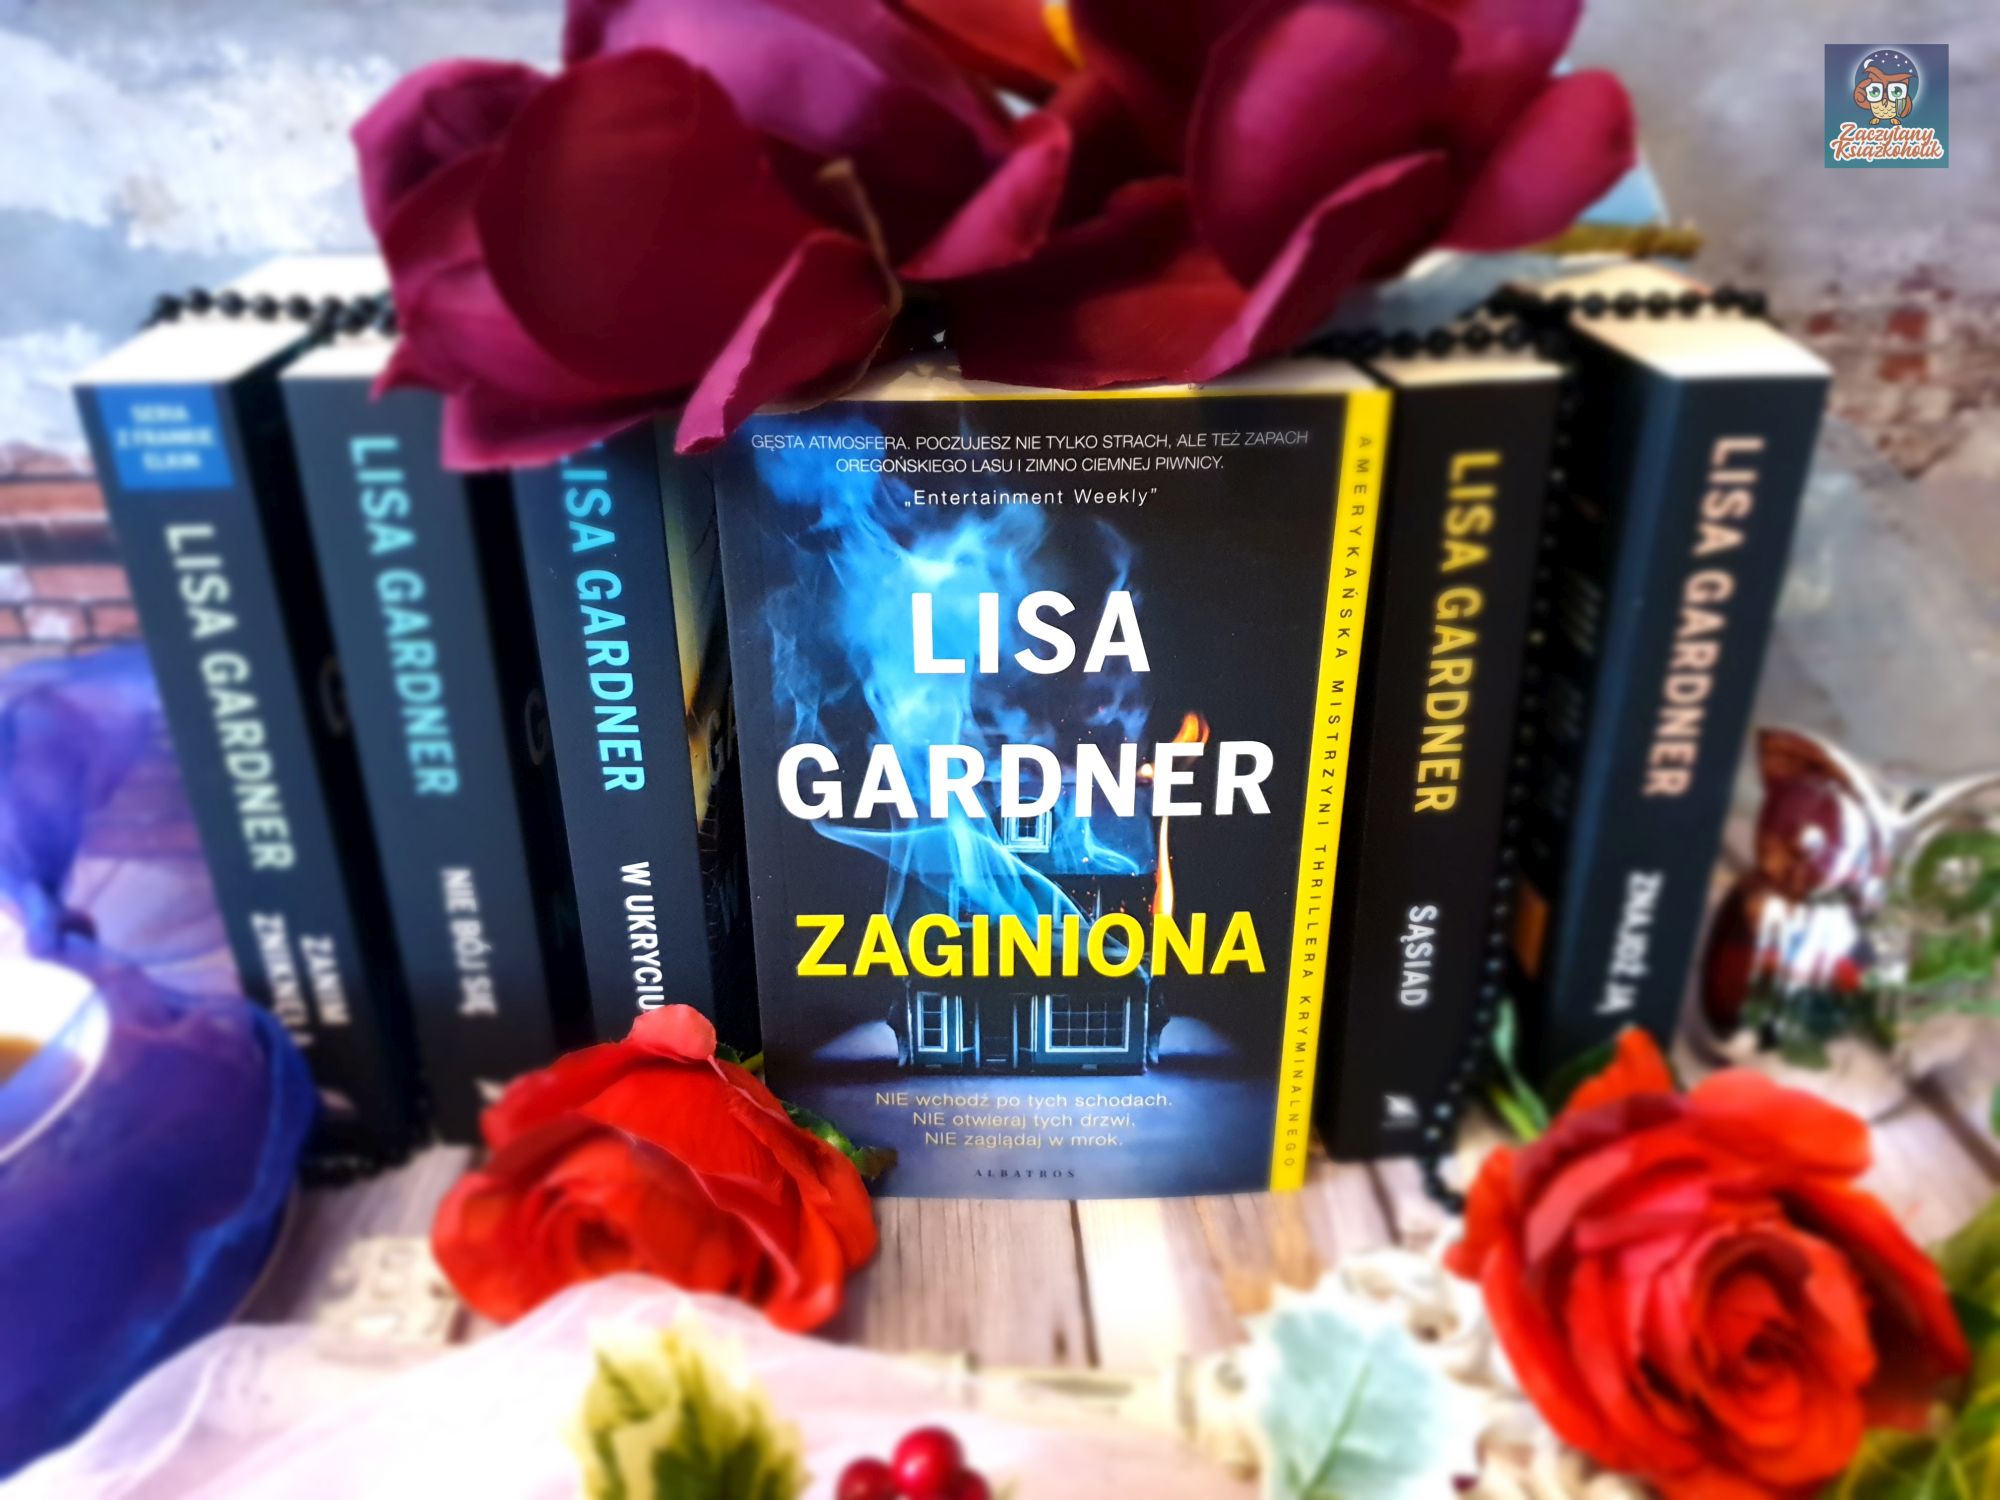 Zaginiona - Lisa Gardner - zaczytanyksiazkoholik.pl - blog